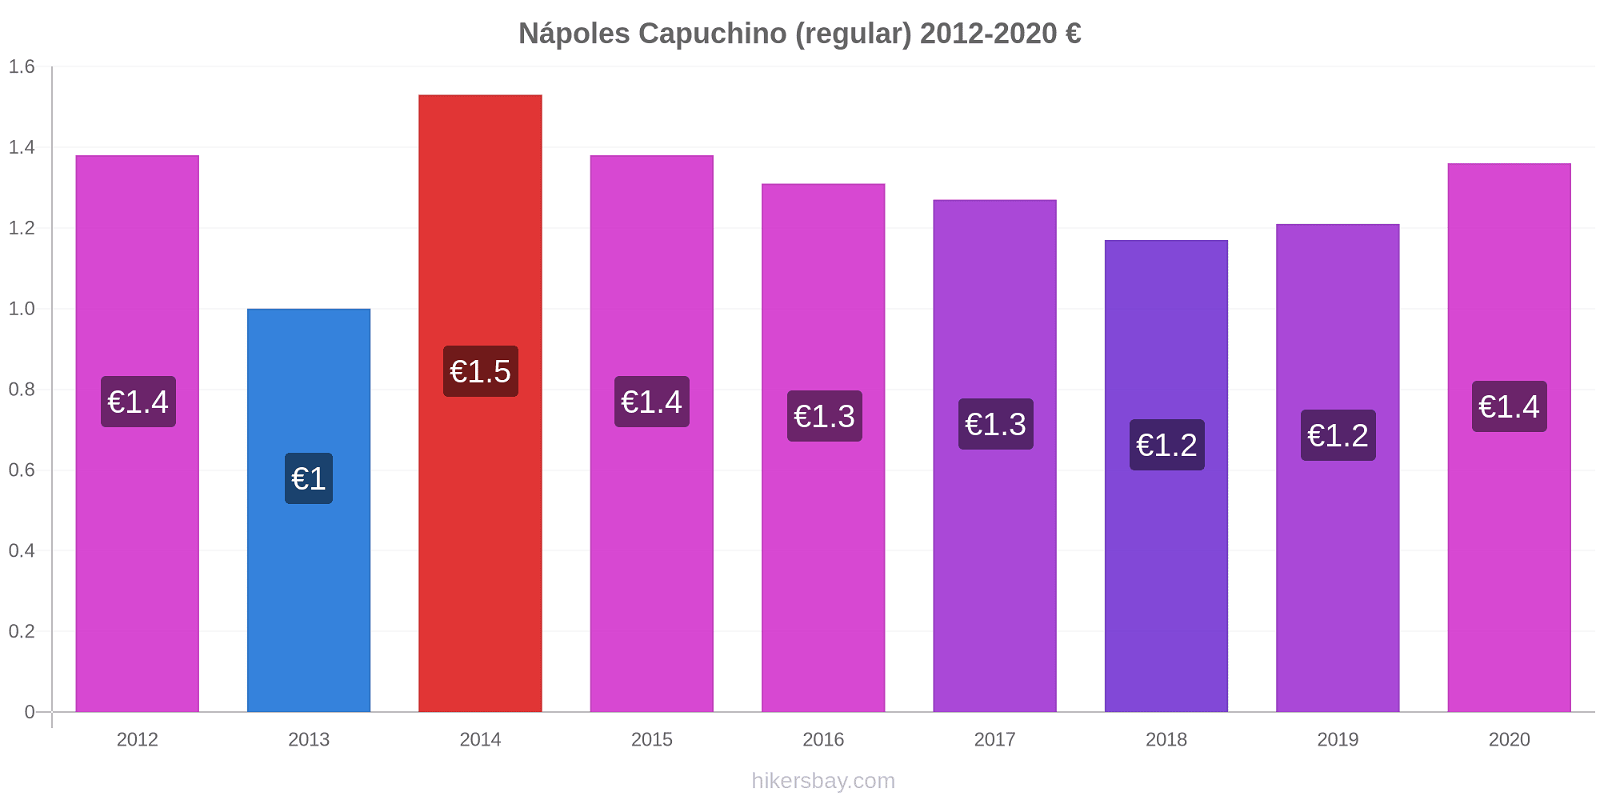 Nápoles cambios de precios Capuchino (regular) hikersbay.com